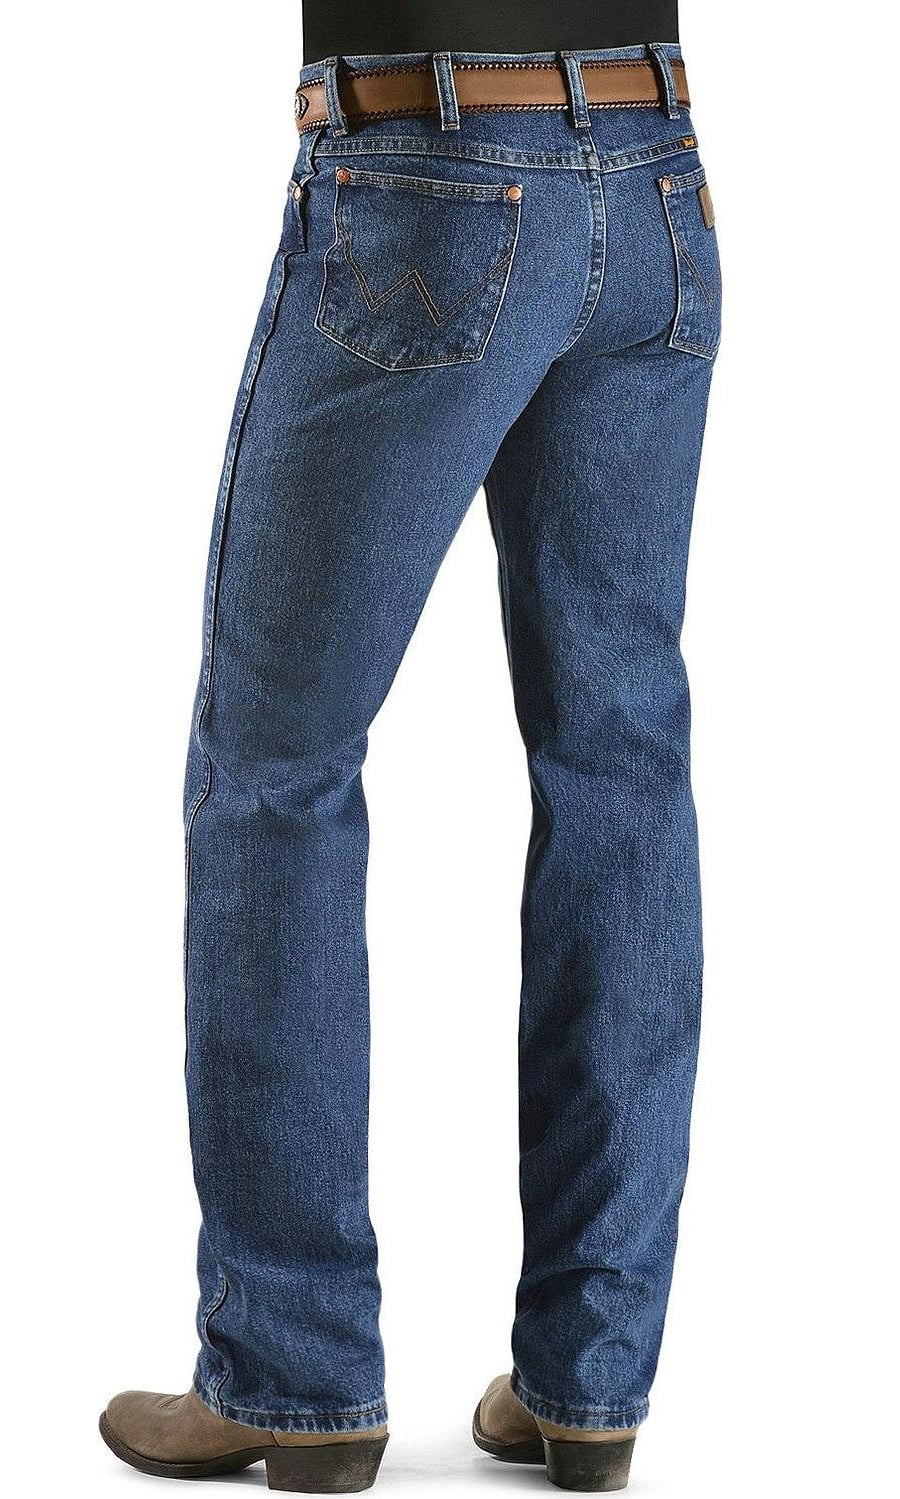 Wrangler Wrangler Men's Jeans 936 Slim Fit Premium Wash Blue Dust